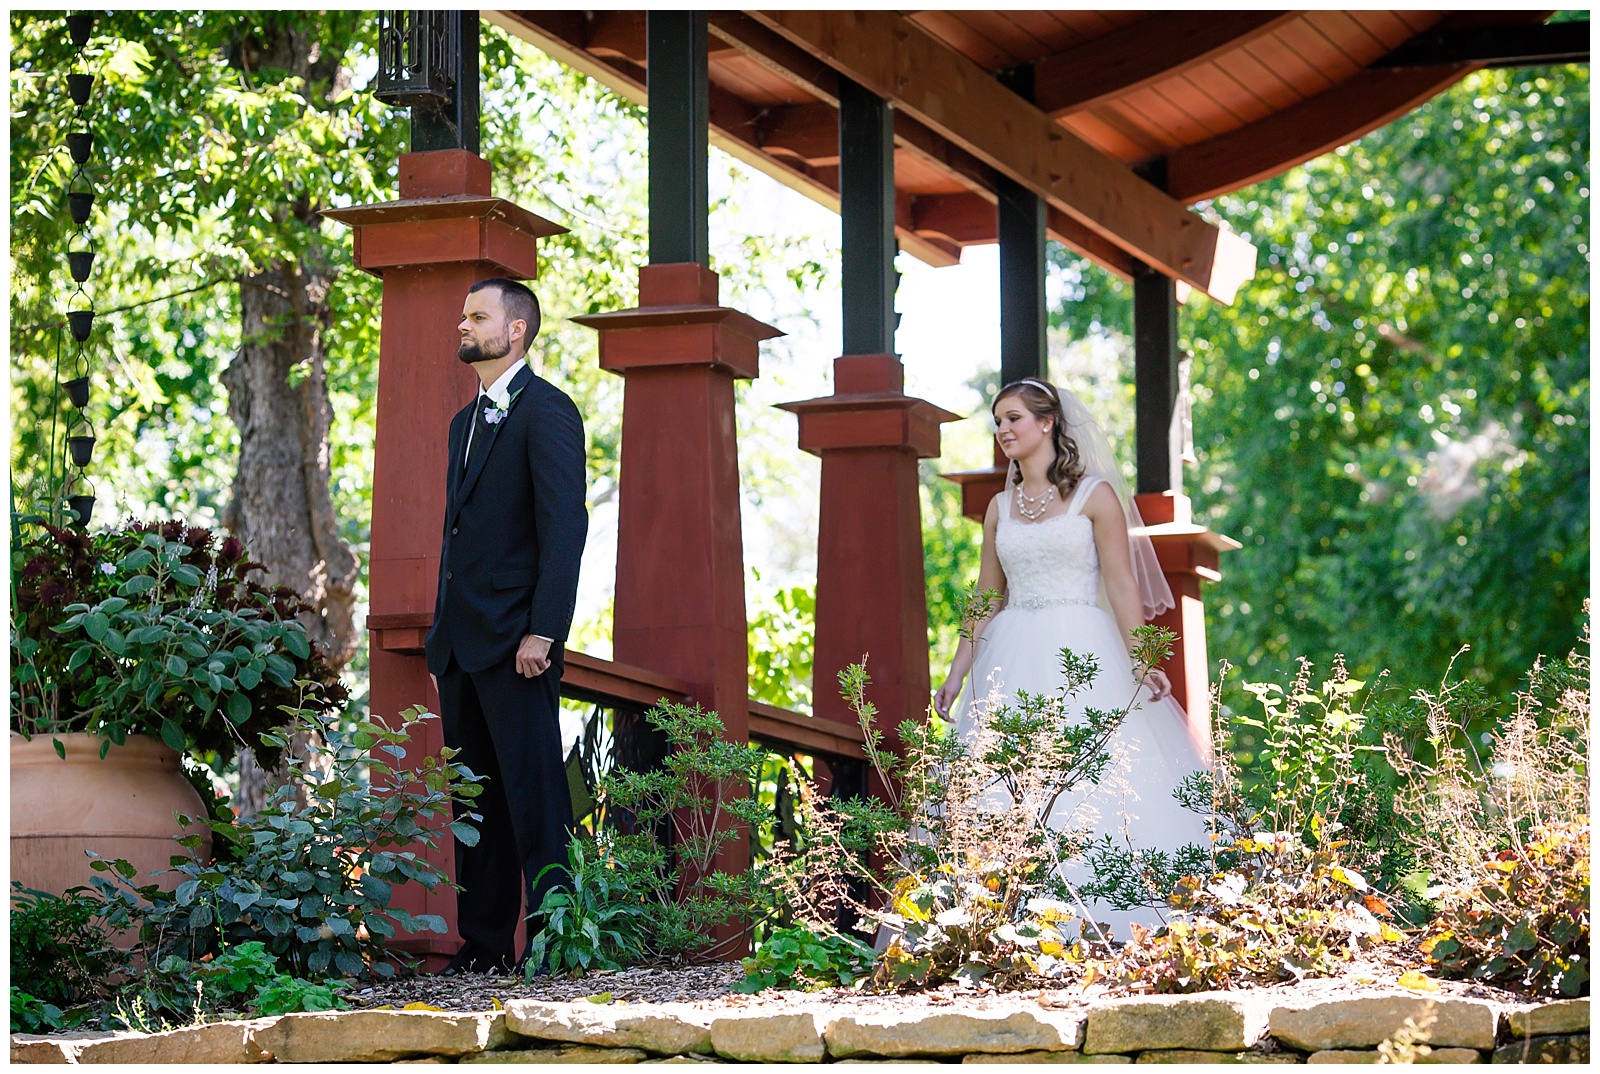 Wedding photography at Lake Shawnee in Topeka, Kansas.